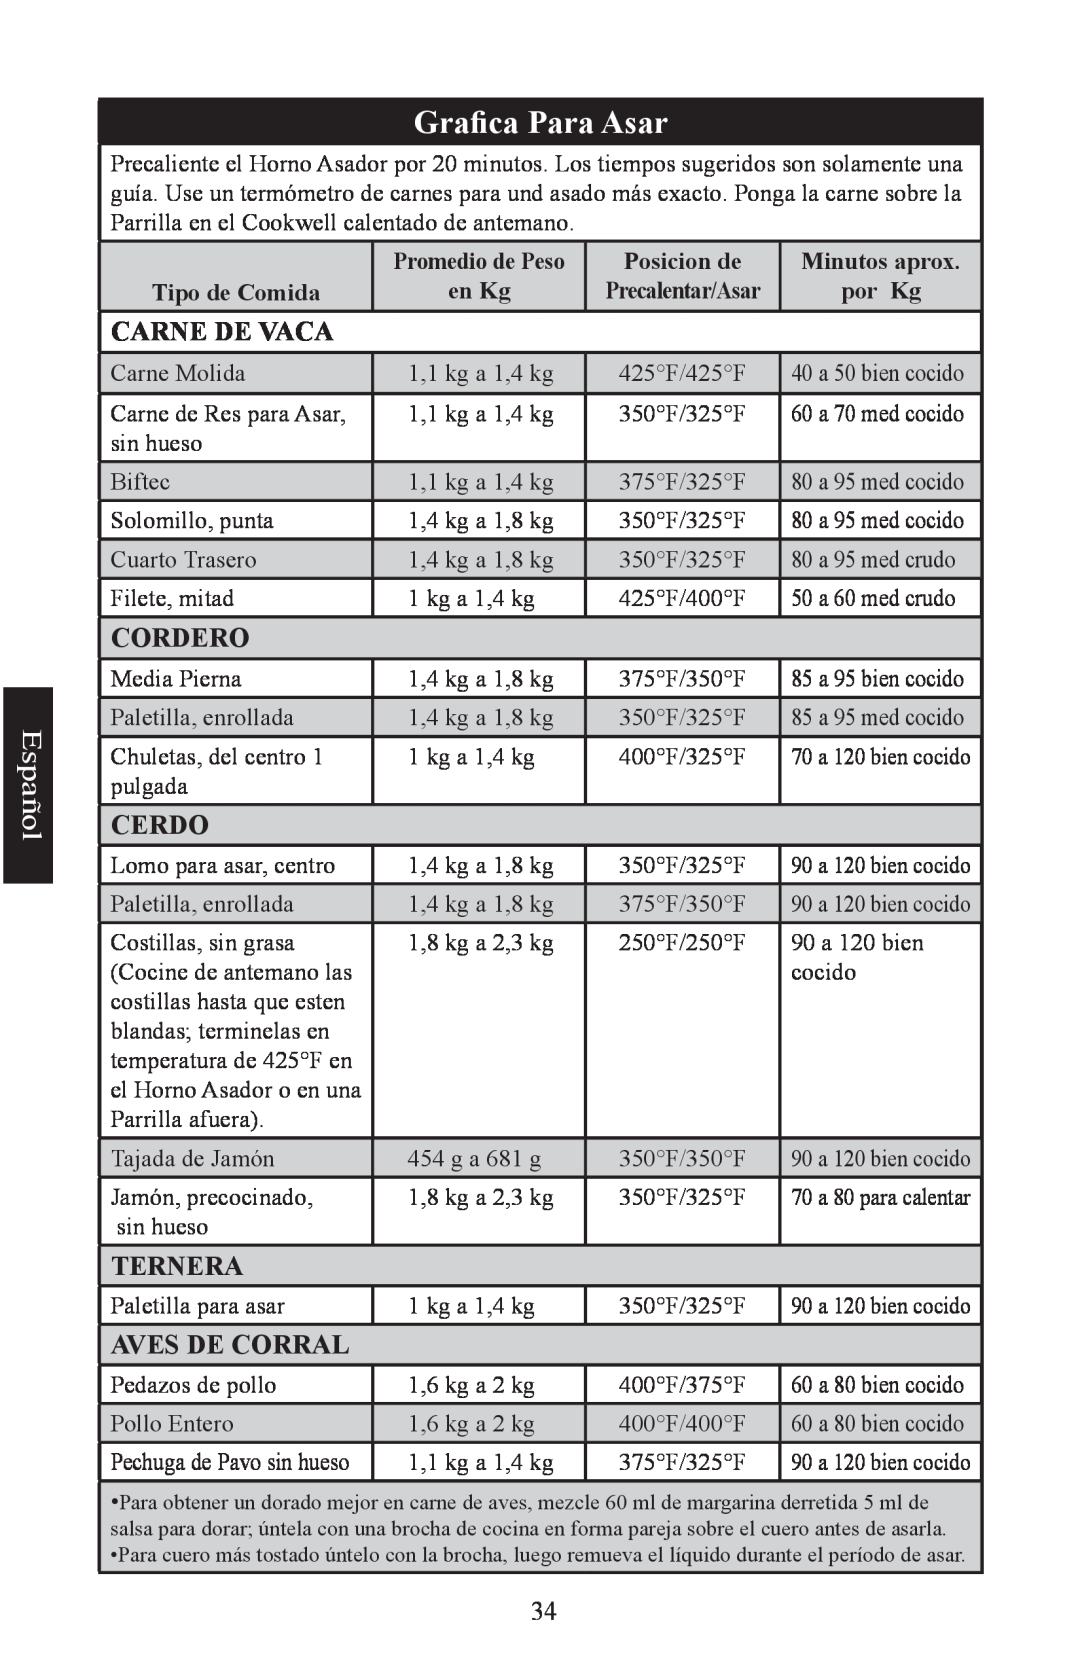 Nesco Electric Roaster Oven manual Grafica Para Asar, Español, Promedio de Peso, Posicion de, Minutos aprox, Tipo de Comida 